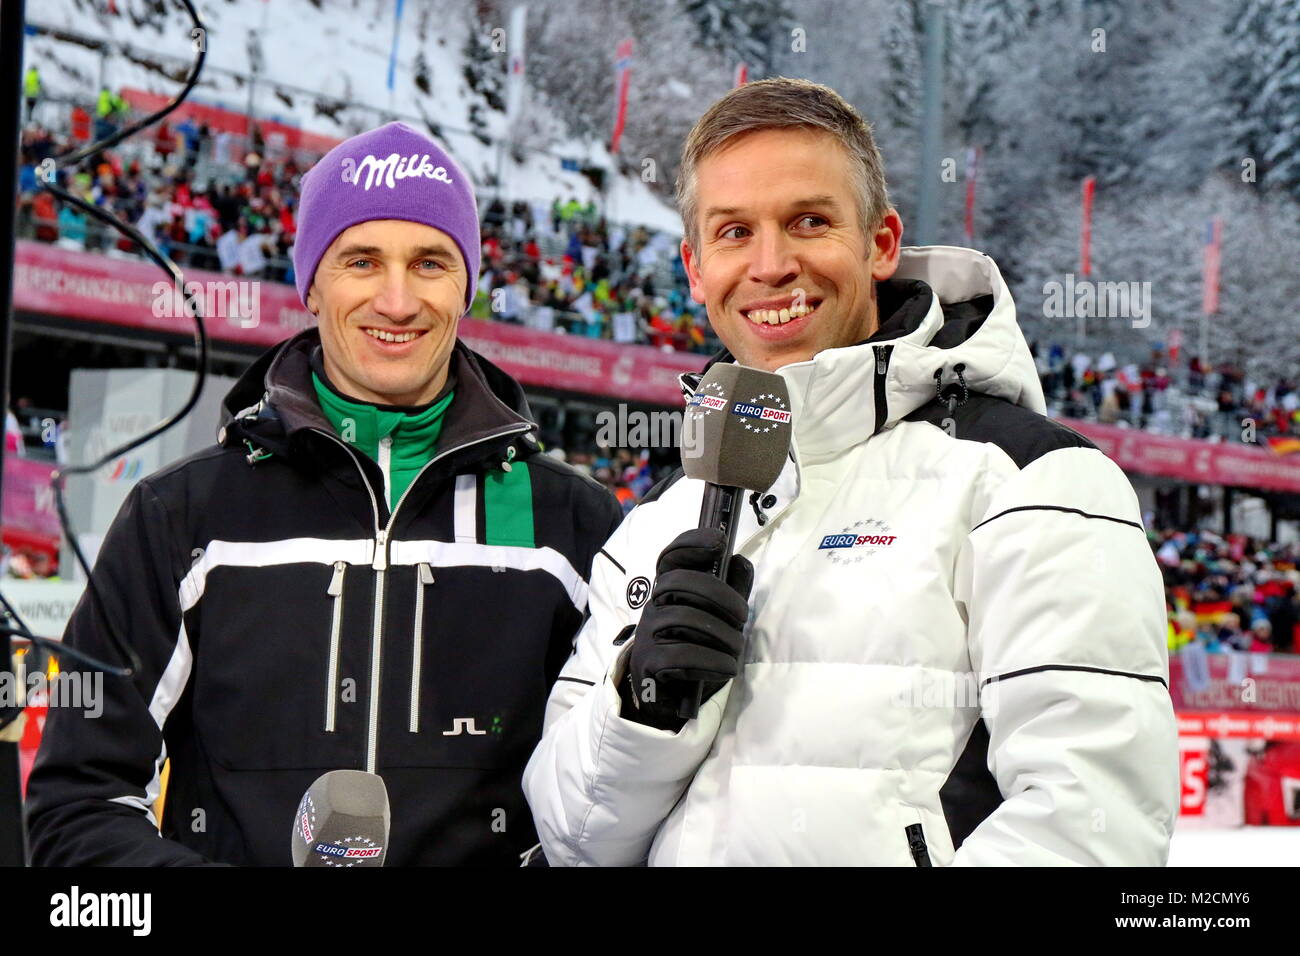 Martin SCHMITT, Skisprung Experte bei Europsport mit Moderator Sebastian TIFFERT. Qualfikation für 63. Vierschanzentournee Auftaktspringen Oberstdorf Stock Photo